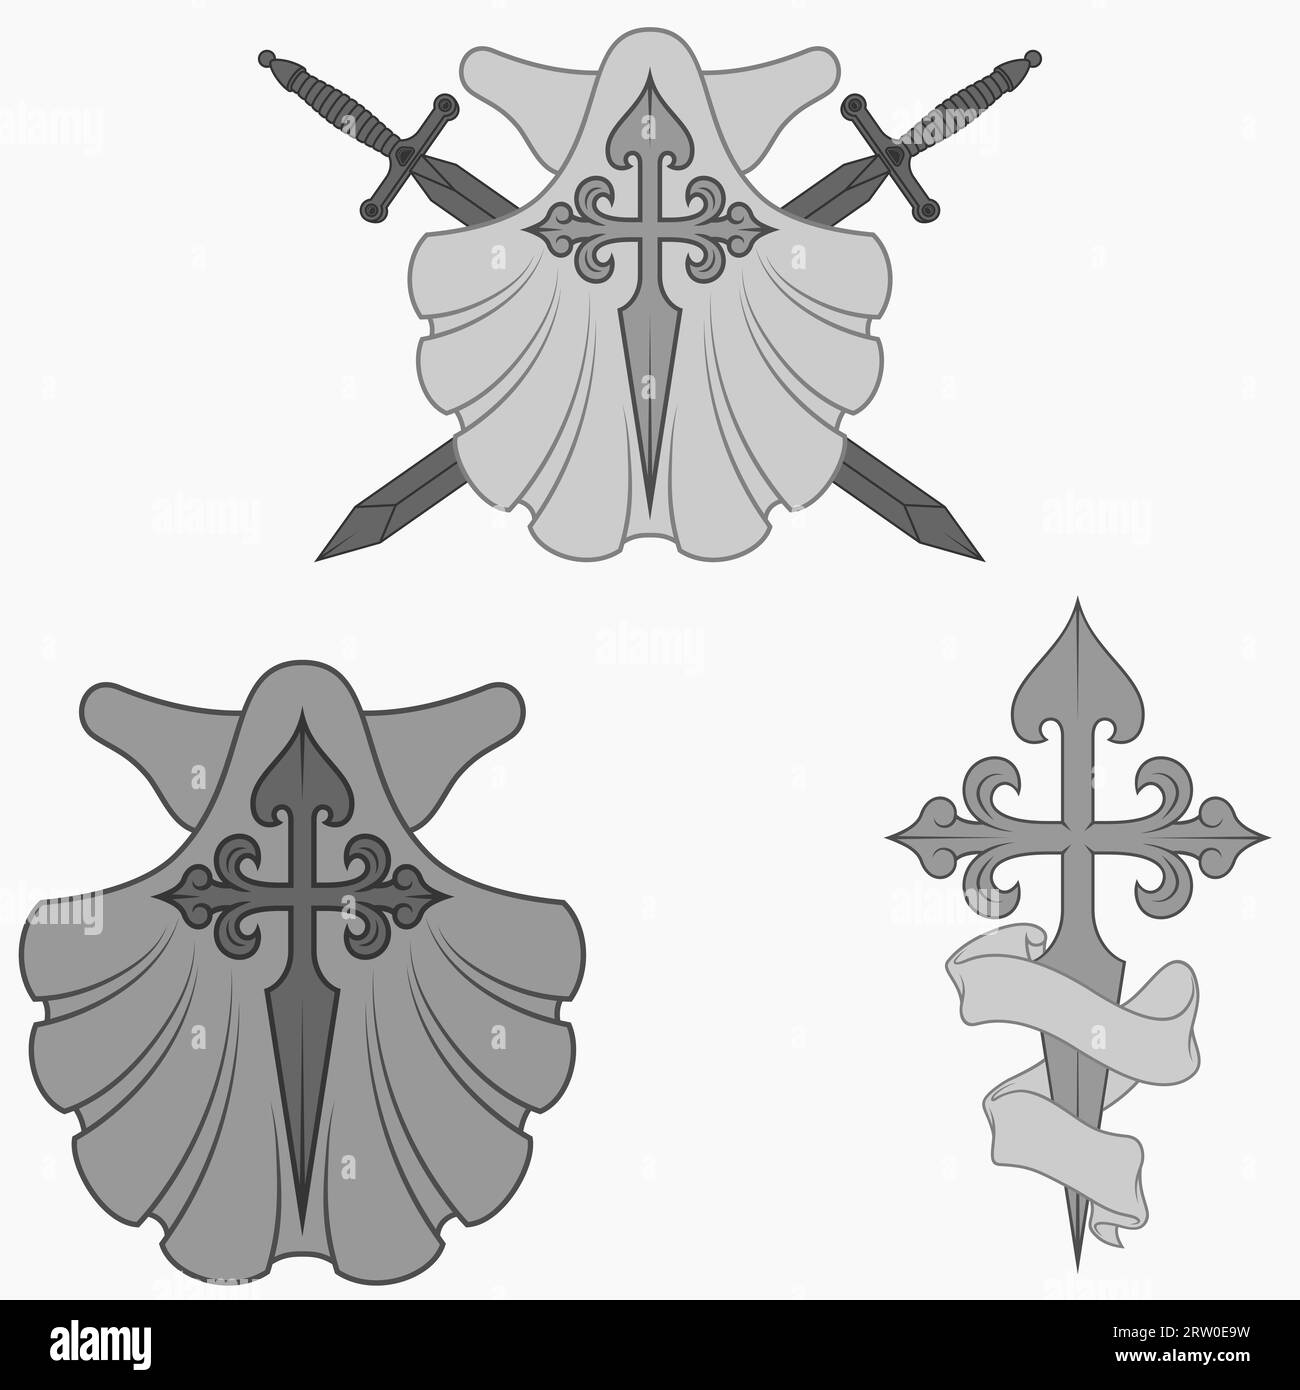 Conception vectorielle de symbologie chrétienne de l'apôtre santiago, santiago croix avec pétoncle, épée et ruban Illustration de Vecteur